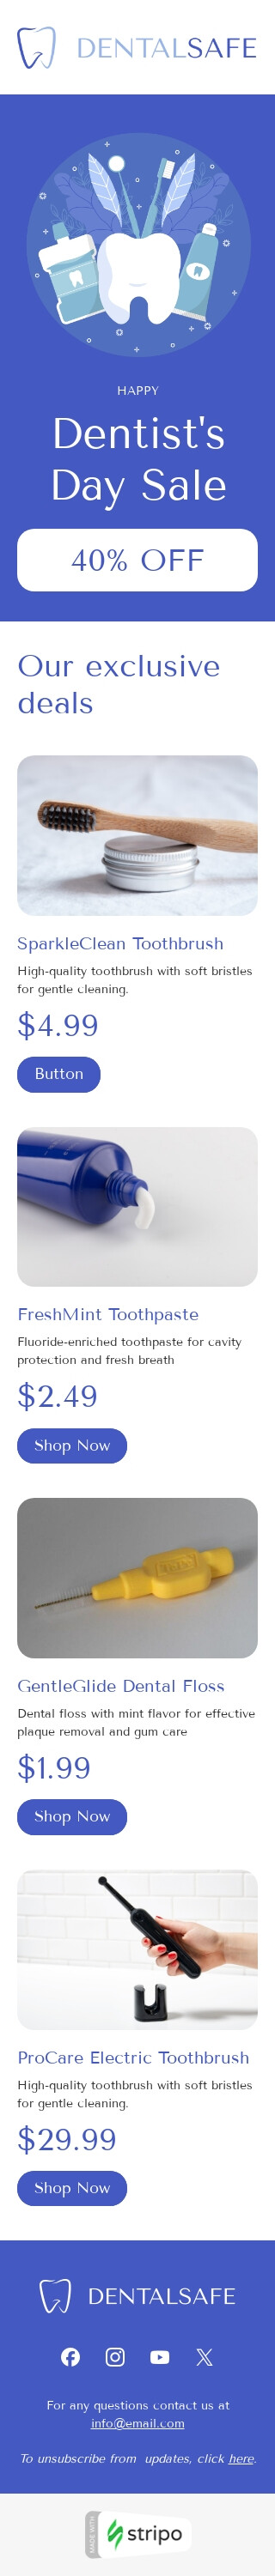 Modello email Giornata nazionale del dentista «I migliori prodotti dentali» per il settore industriale di salute e bellezza Visualizzazione mobile